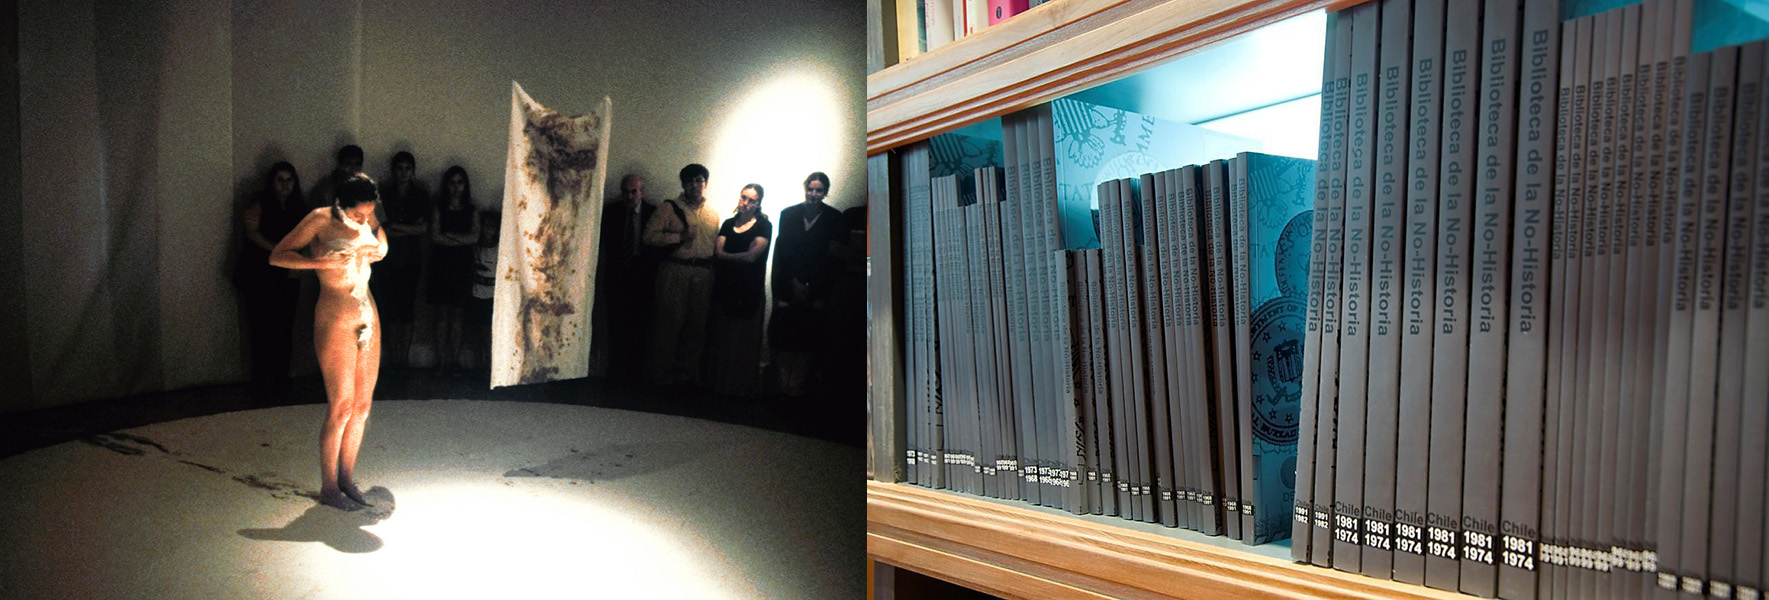 El cuerpo de la memoria, de Janet Toro (1999), y Biblioteca de la no-historia, de Voluspa Jarpa (2010). Fotos cortesía de las artistas.